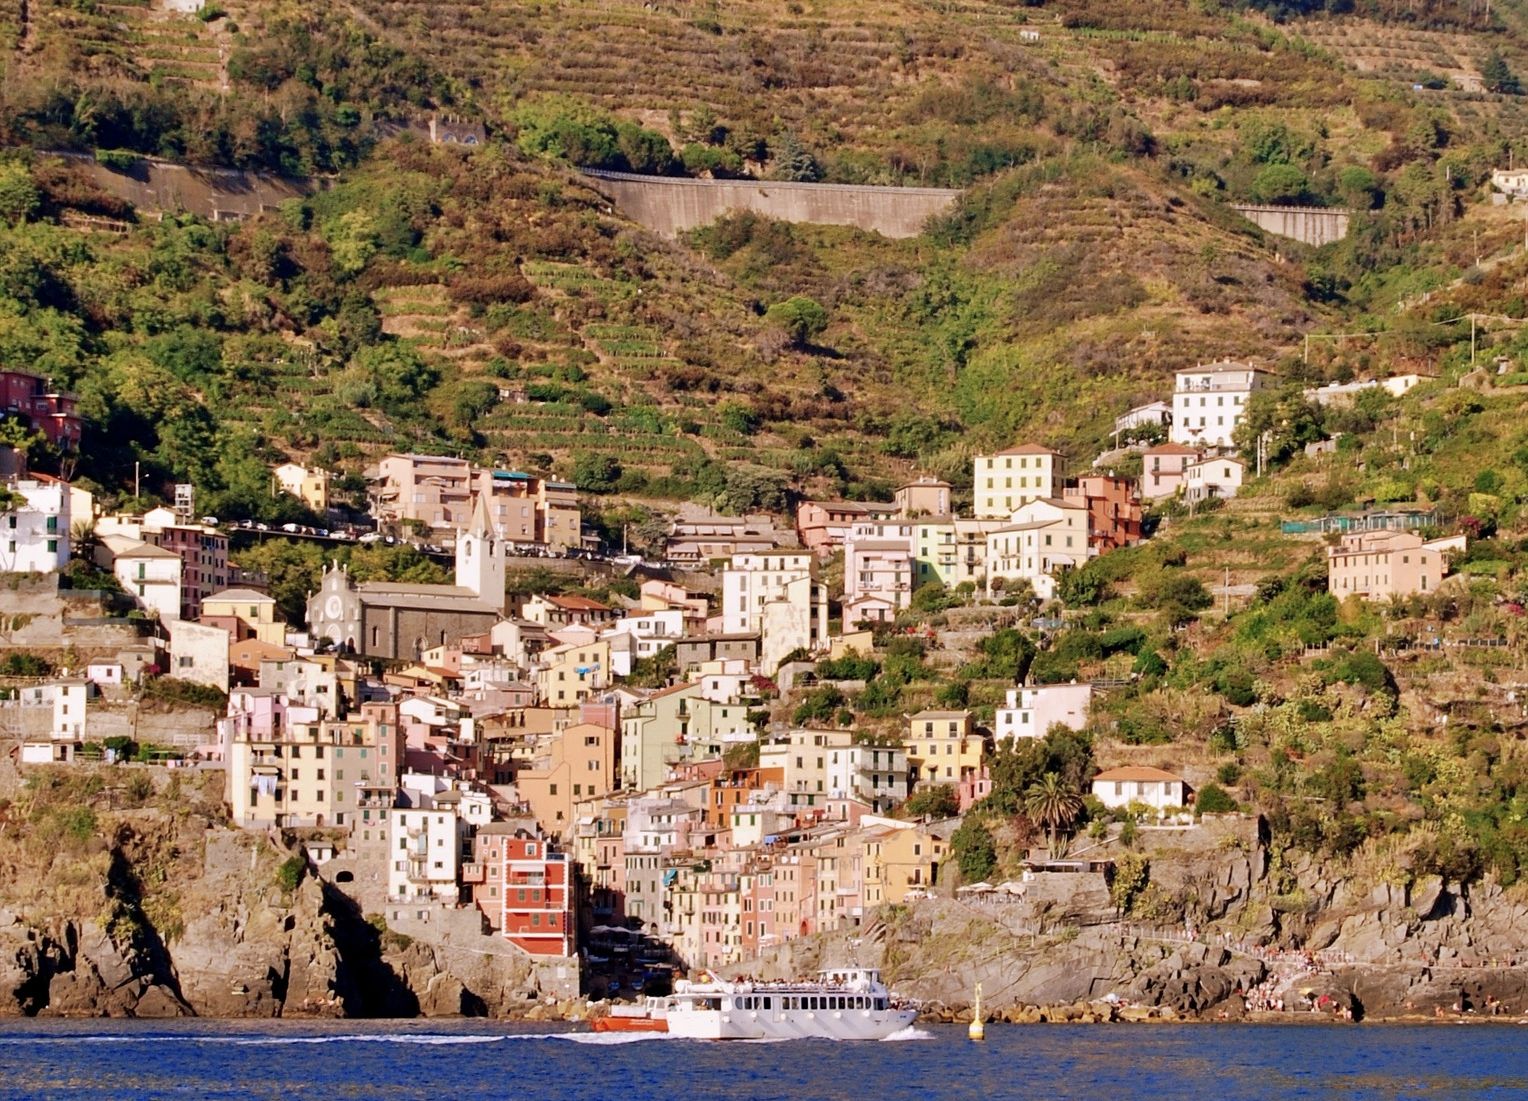 Coastal road above Riomaggiore